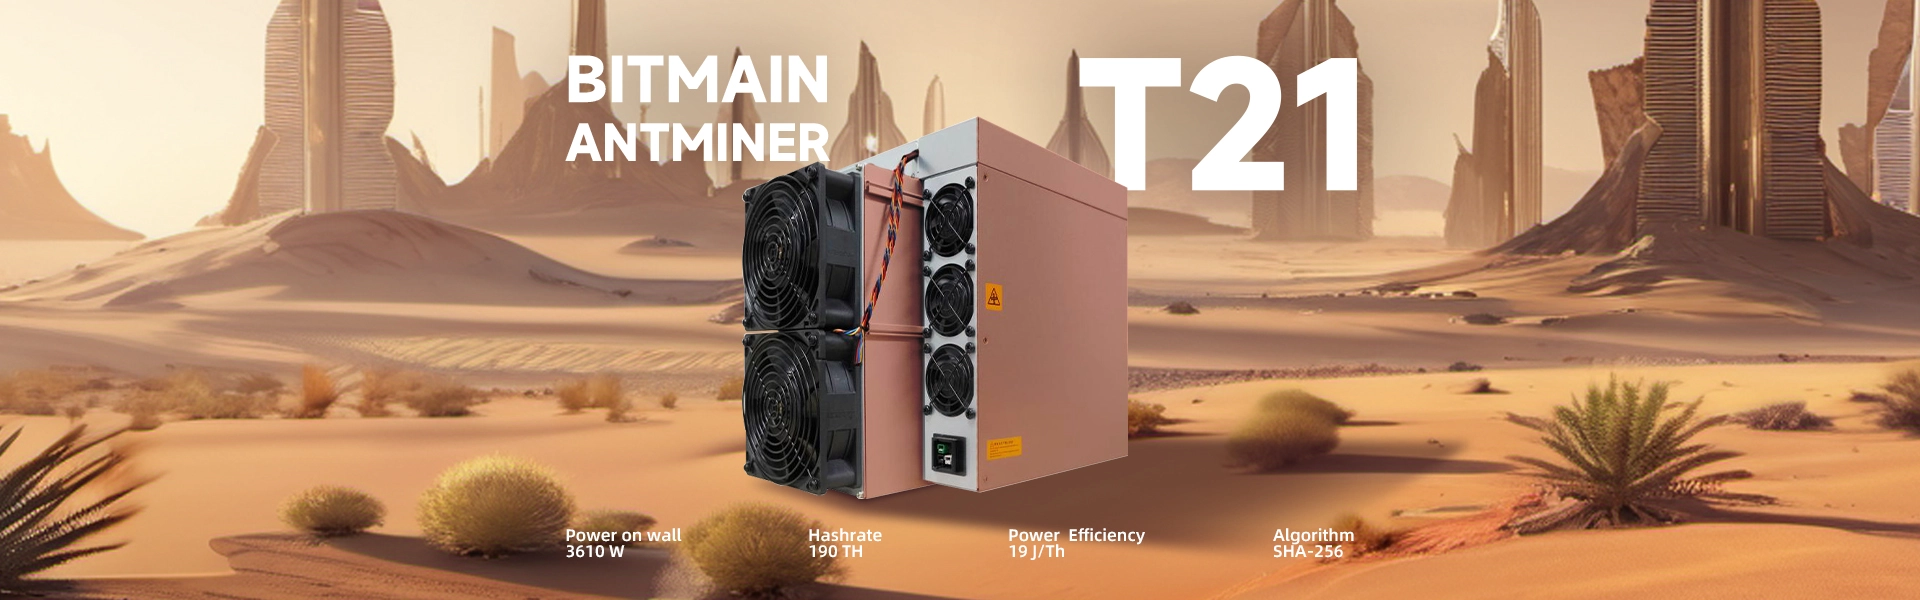 ANTMINER Miner T21 BANNER